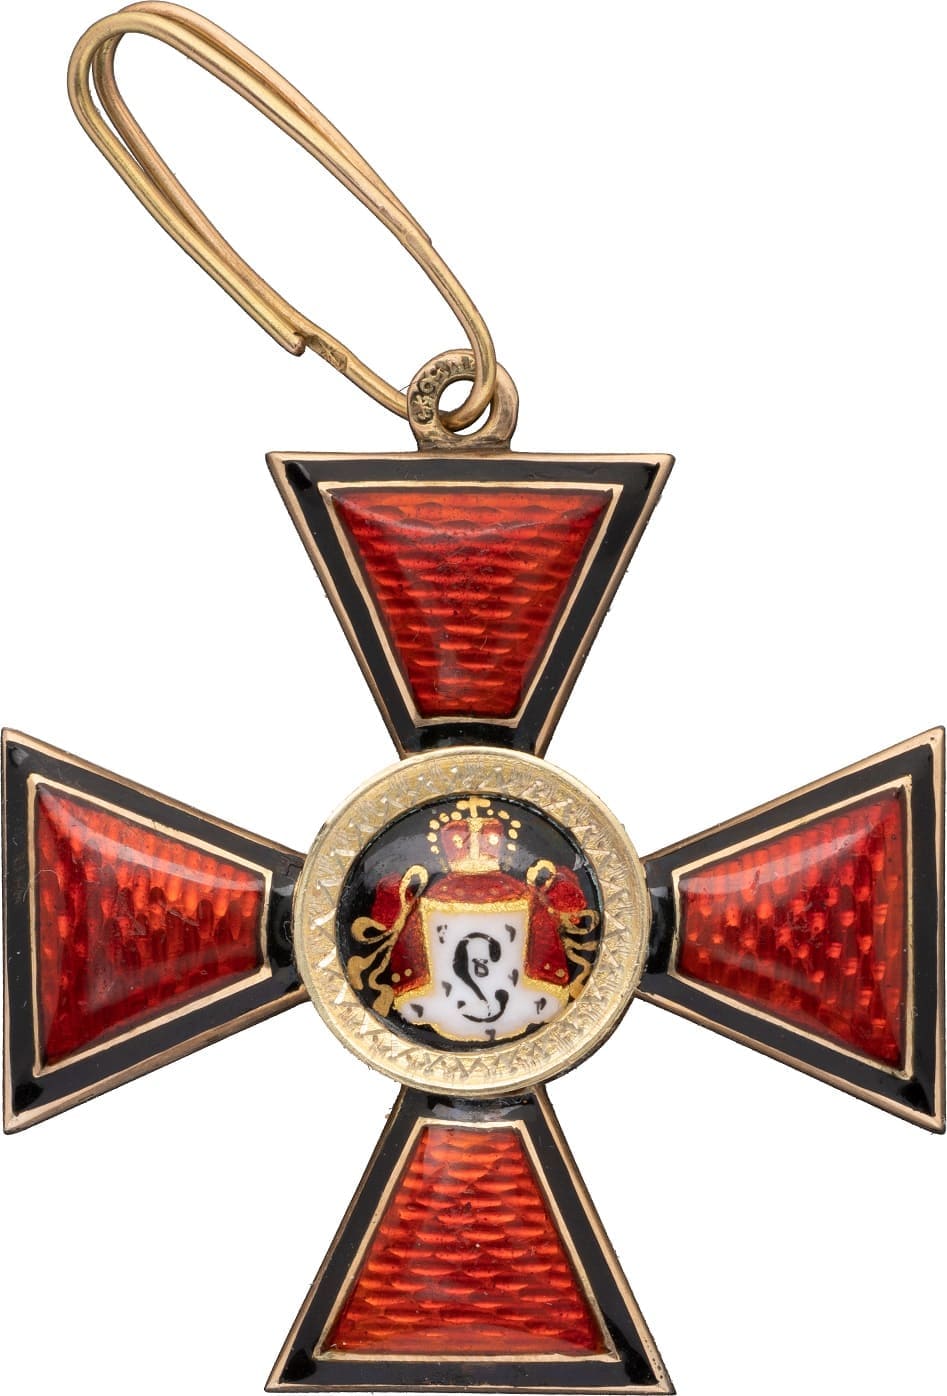 Знак ордена Святого равноапостольного князя Владимира 4-й степени  Никольс и Плинке.jpg